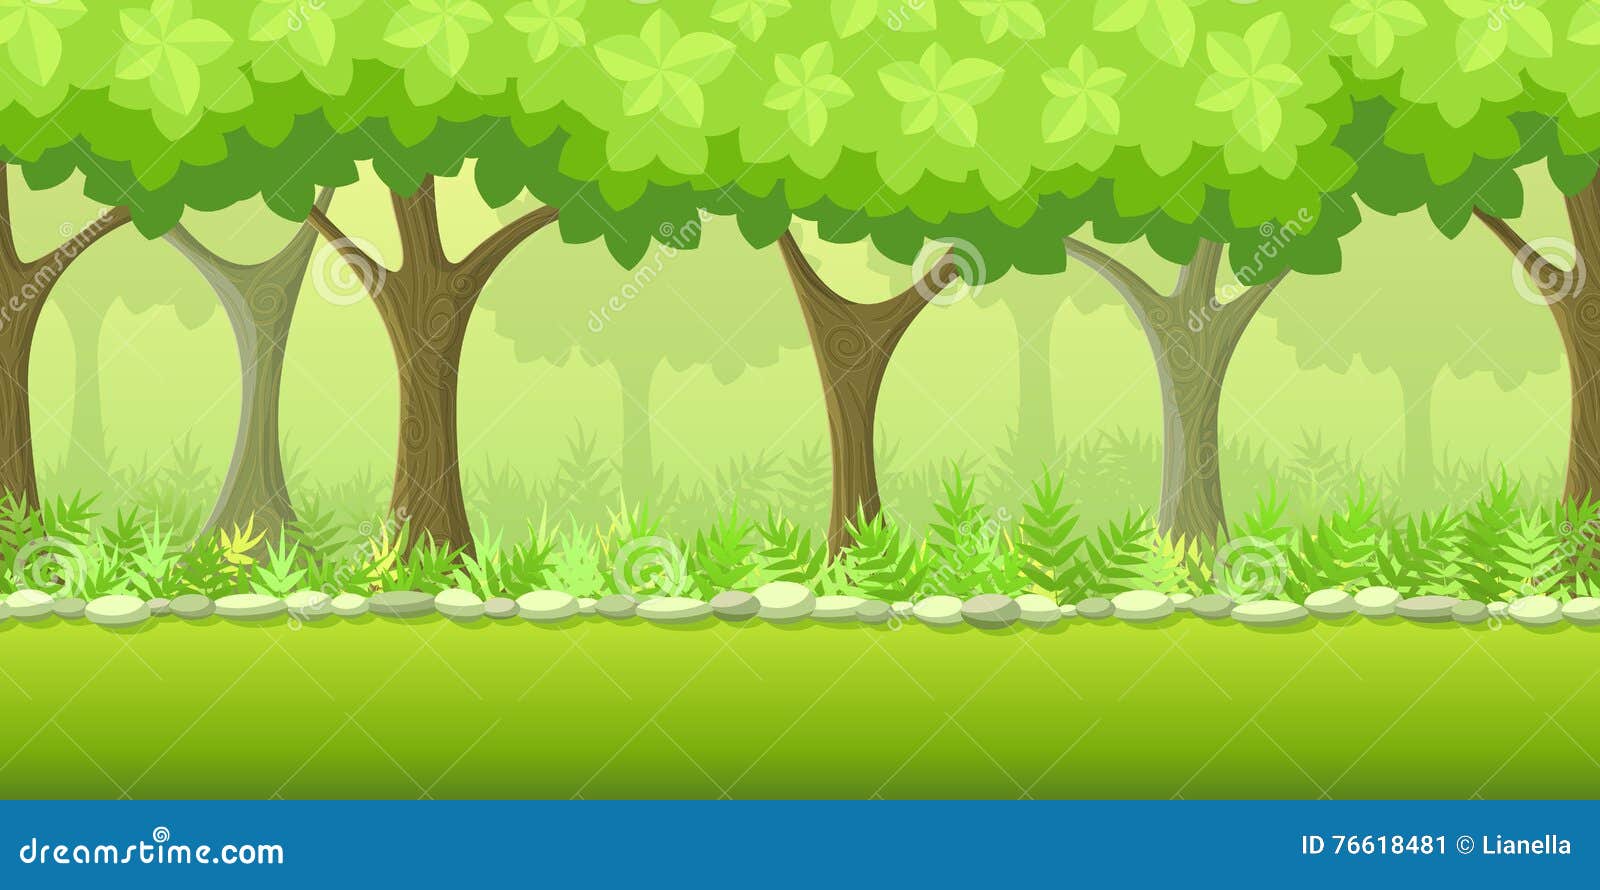 Trò chơi nền rừng vector: Hãy khám phá thế giới rừng nguyên sơ với trò chơi nền rừng vector đầy thú vị! Trò chơi này sẽ đưa bạn vào một hành trình khám phá các loài động vật và cây cối trong rừng. Hãy sẵn sàng để trải nghiệm sự kỳ diệu của thiên nhiên, tạo nên những khoảnh khắc đáng nhớ!